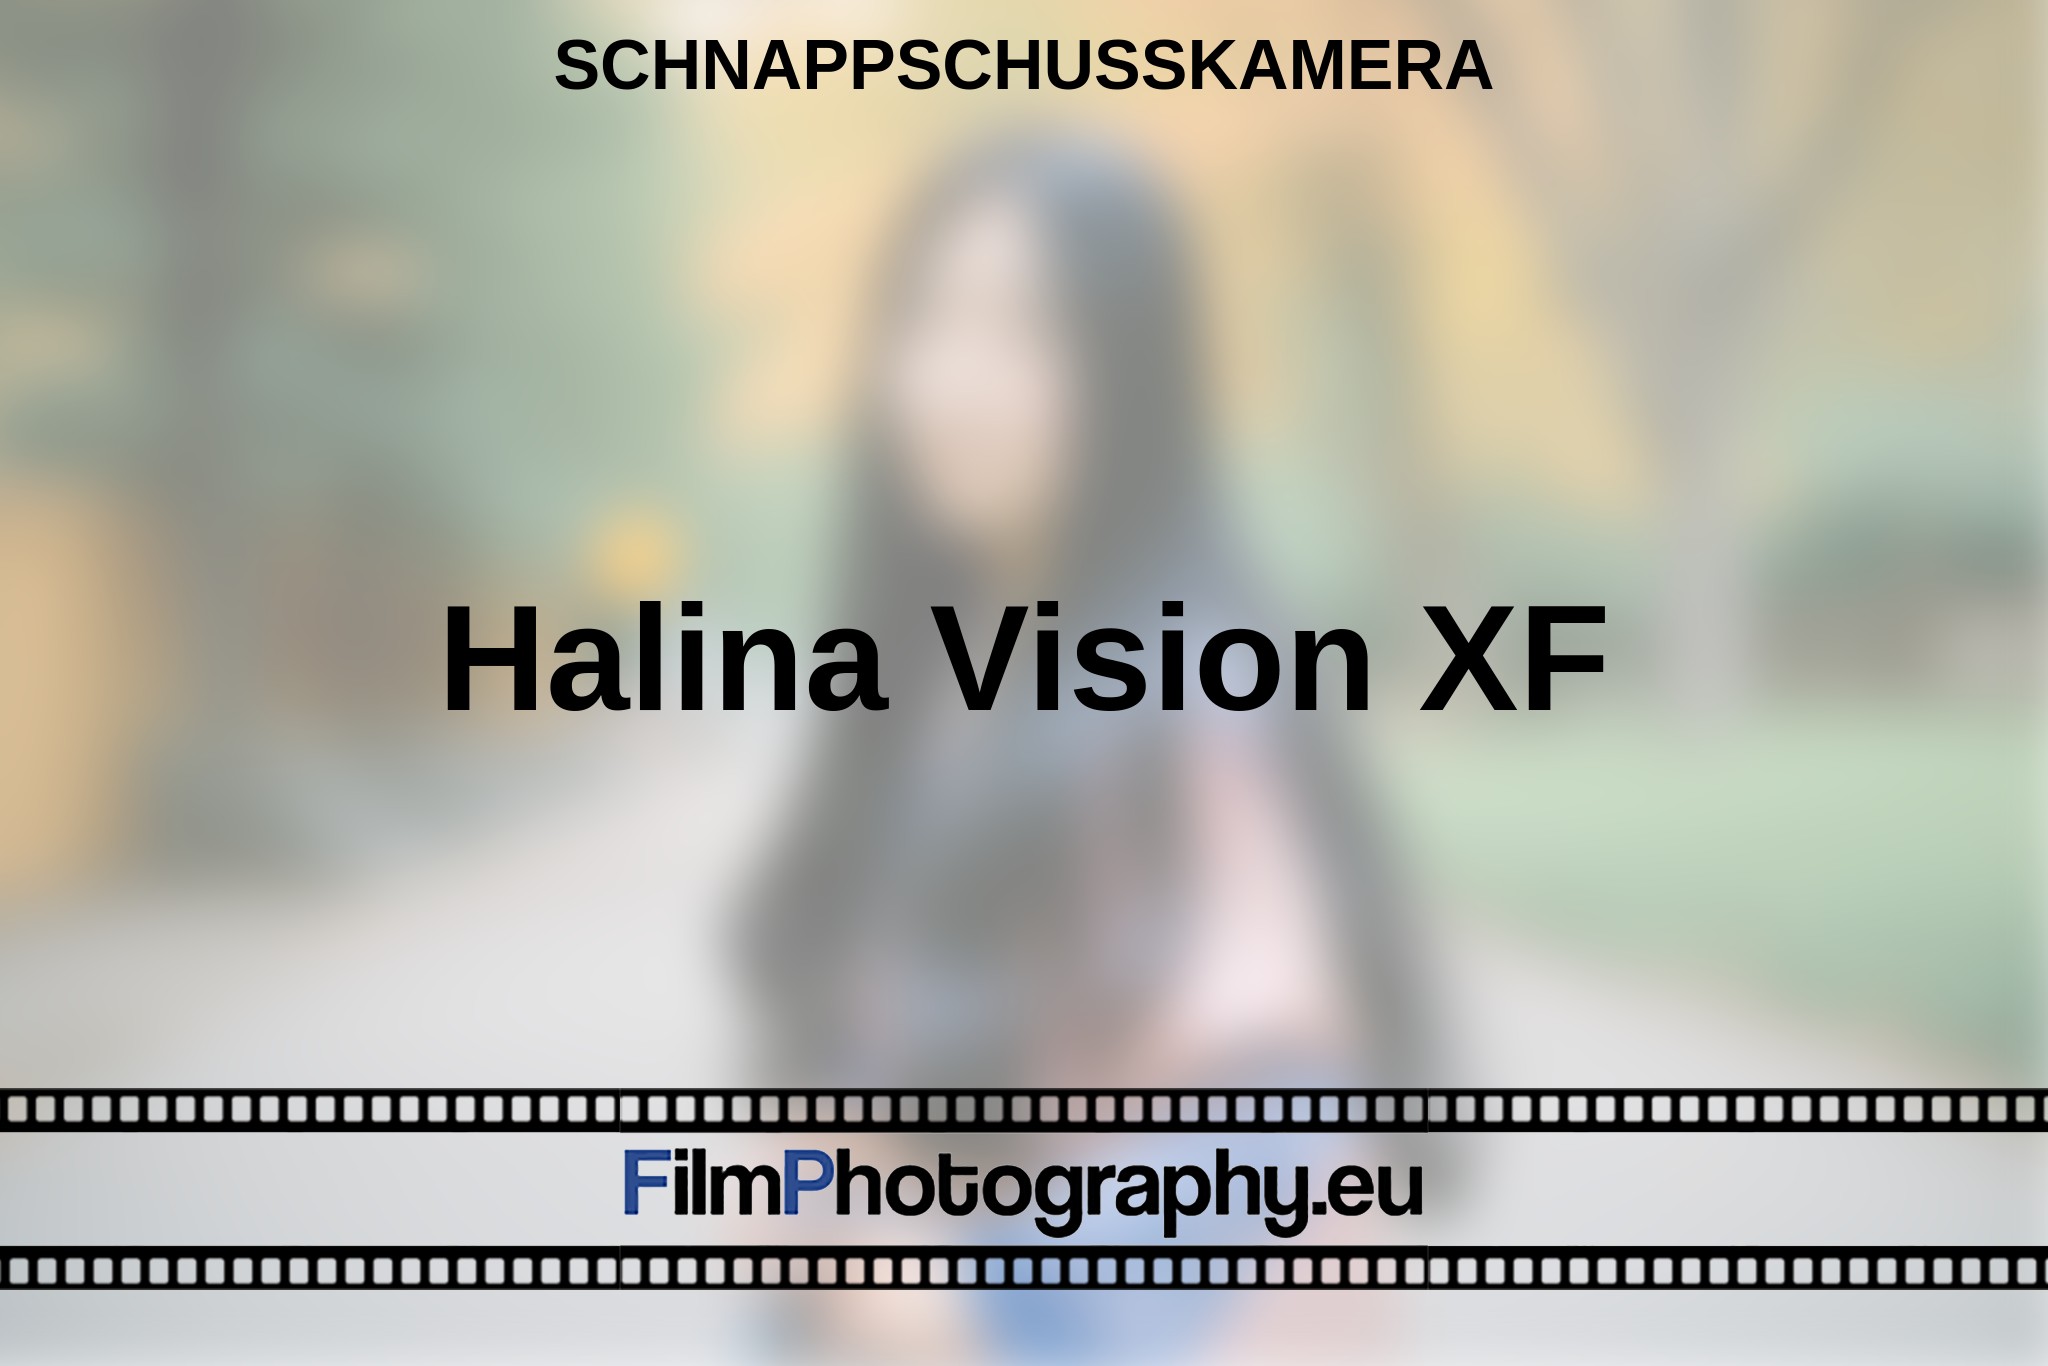 halina-vision-xf-schnappschusskamera-bnv.jpg